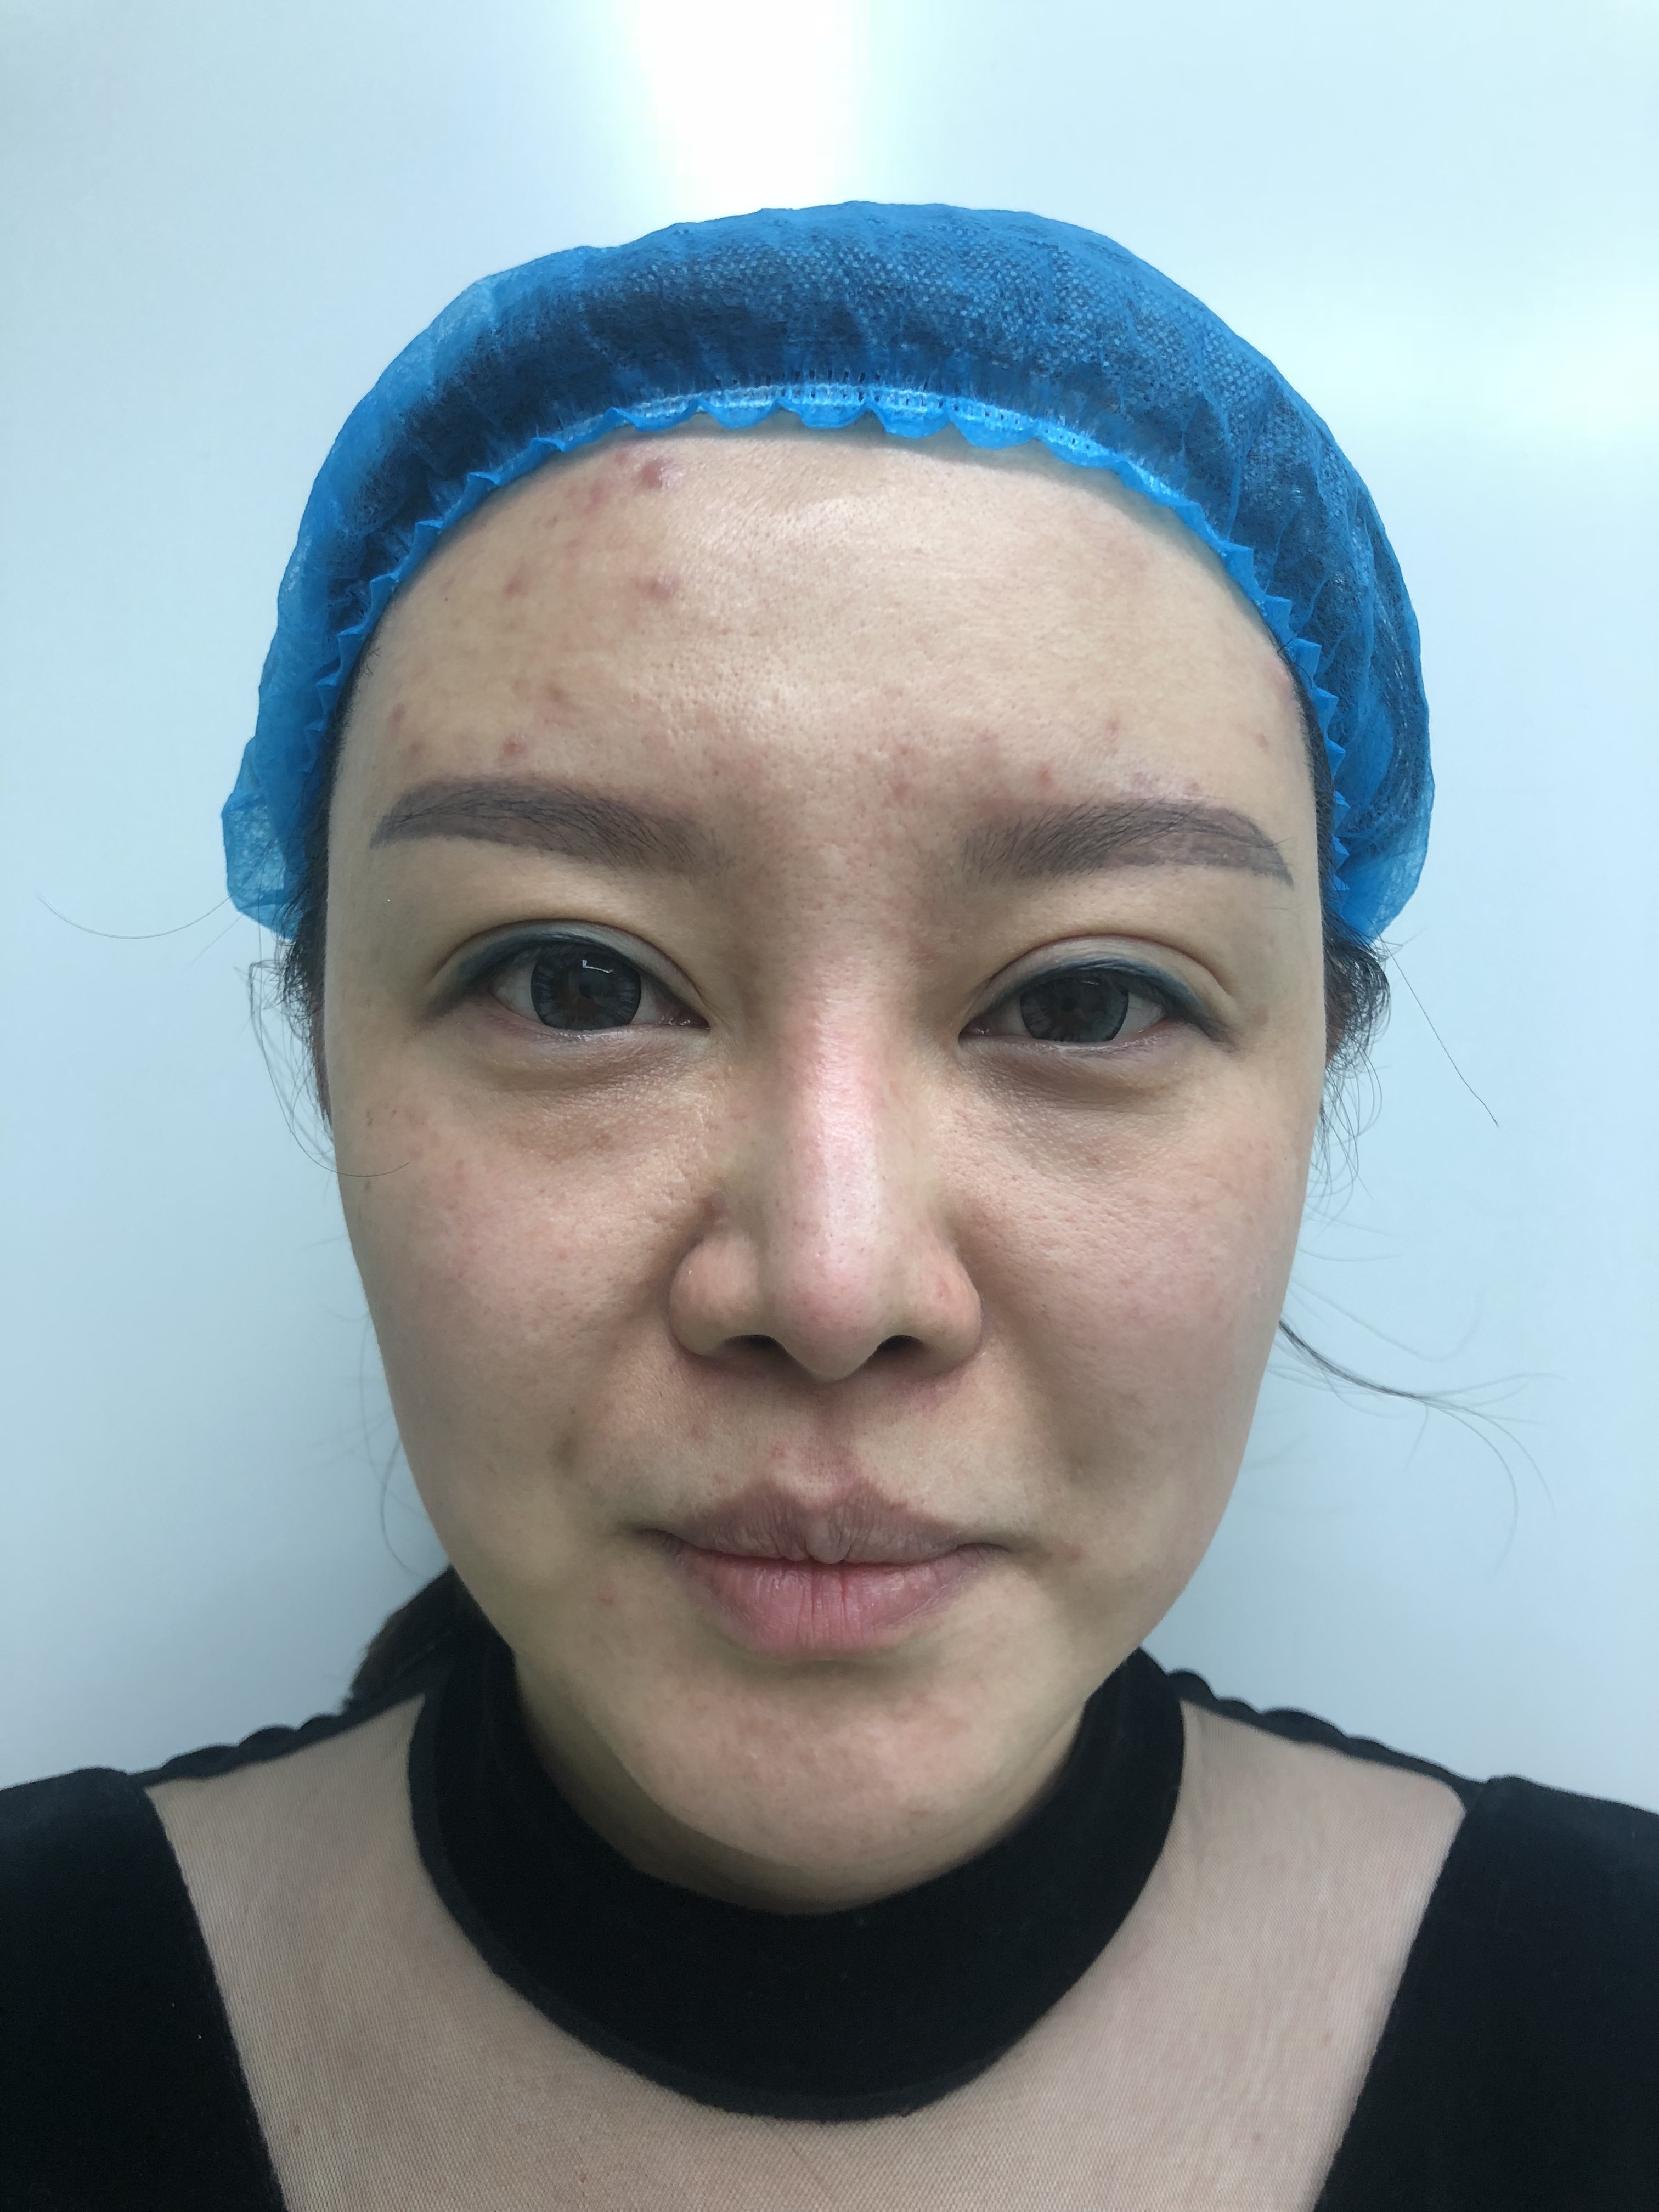 女孩33岁,面部有松弛下垂,通过面部埋线提升手术前术后对比图片. - 哔哩哔哩